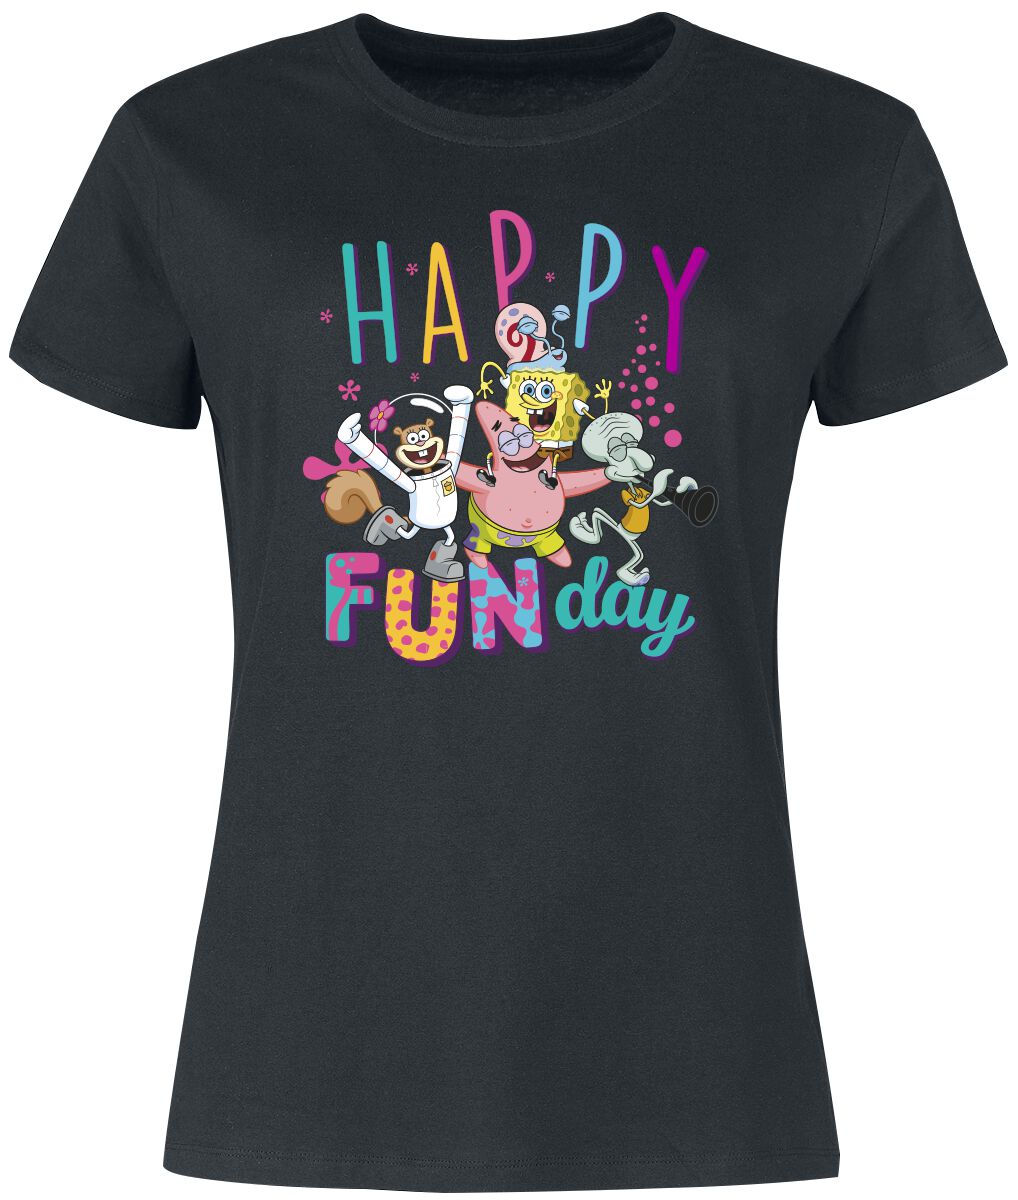 T-Shirt Manches courtes de Bob L'Éponge - Happy Fun Day - S à 3XL - pour Femme - noir